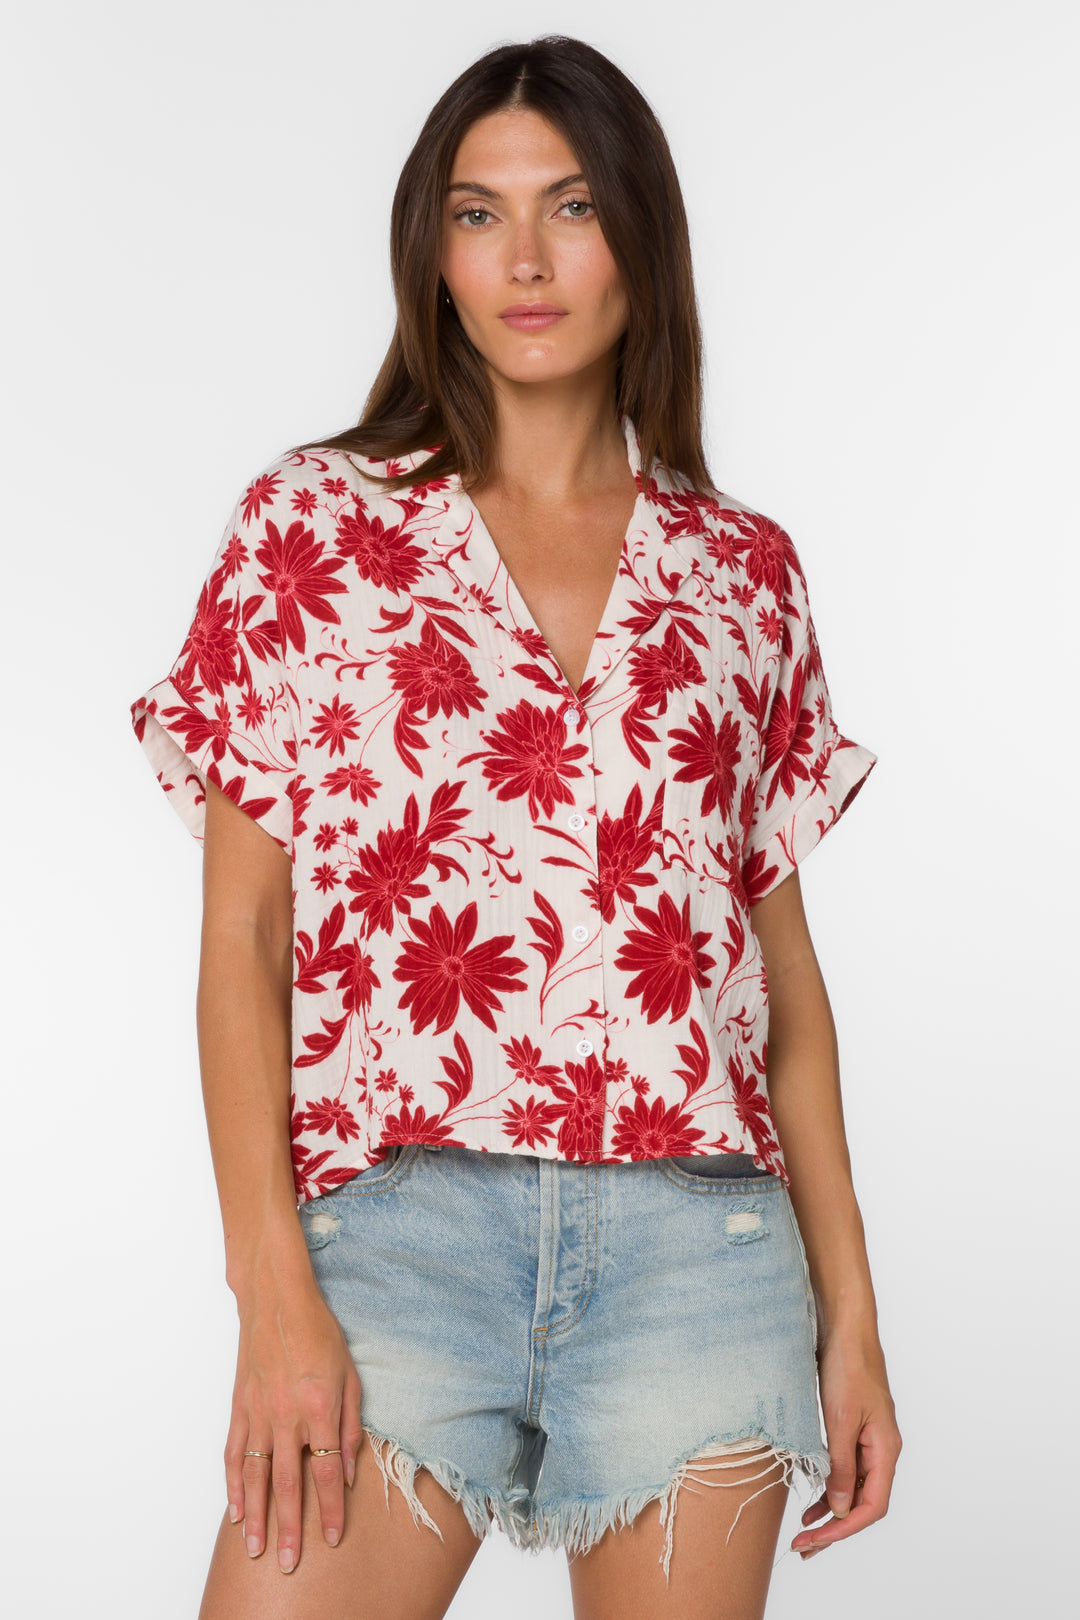 Bane Red Floral Shirt - Tops - Velvet Heart Clothing